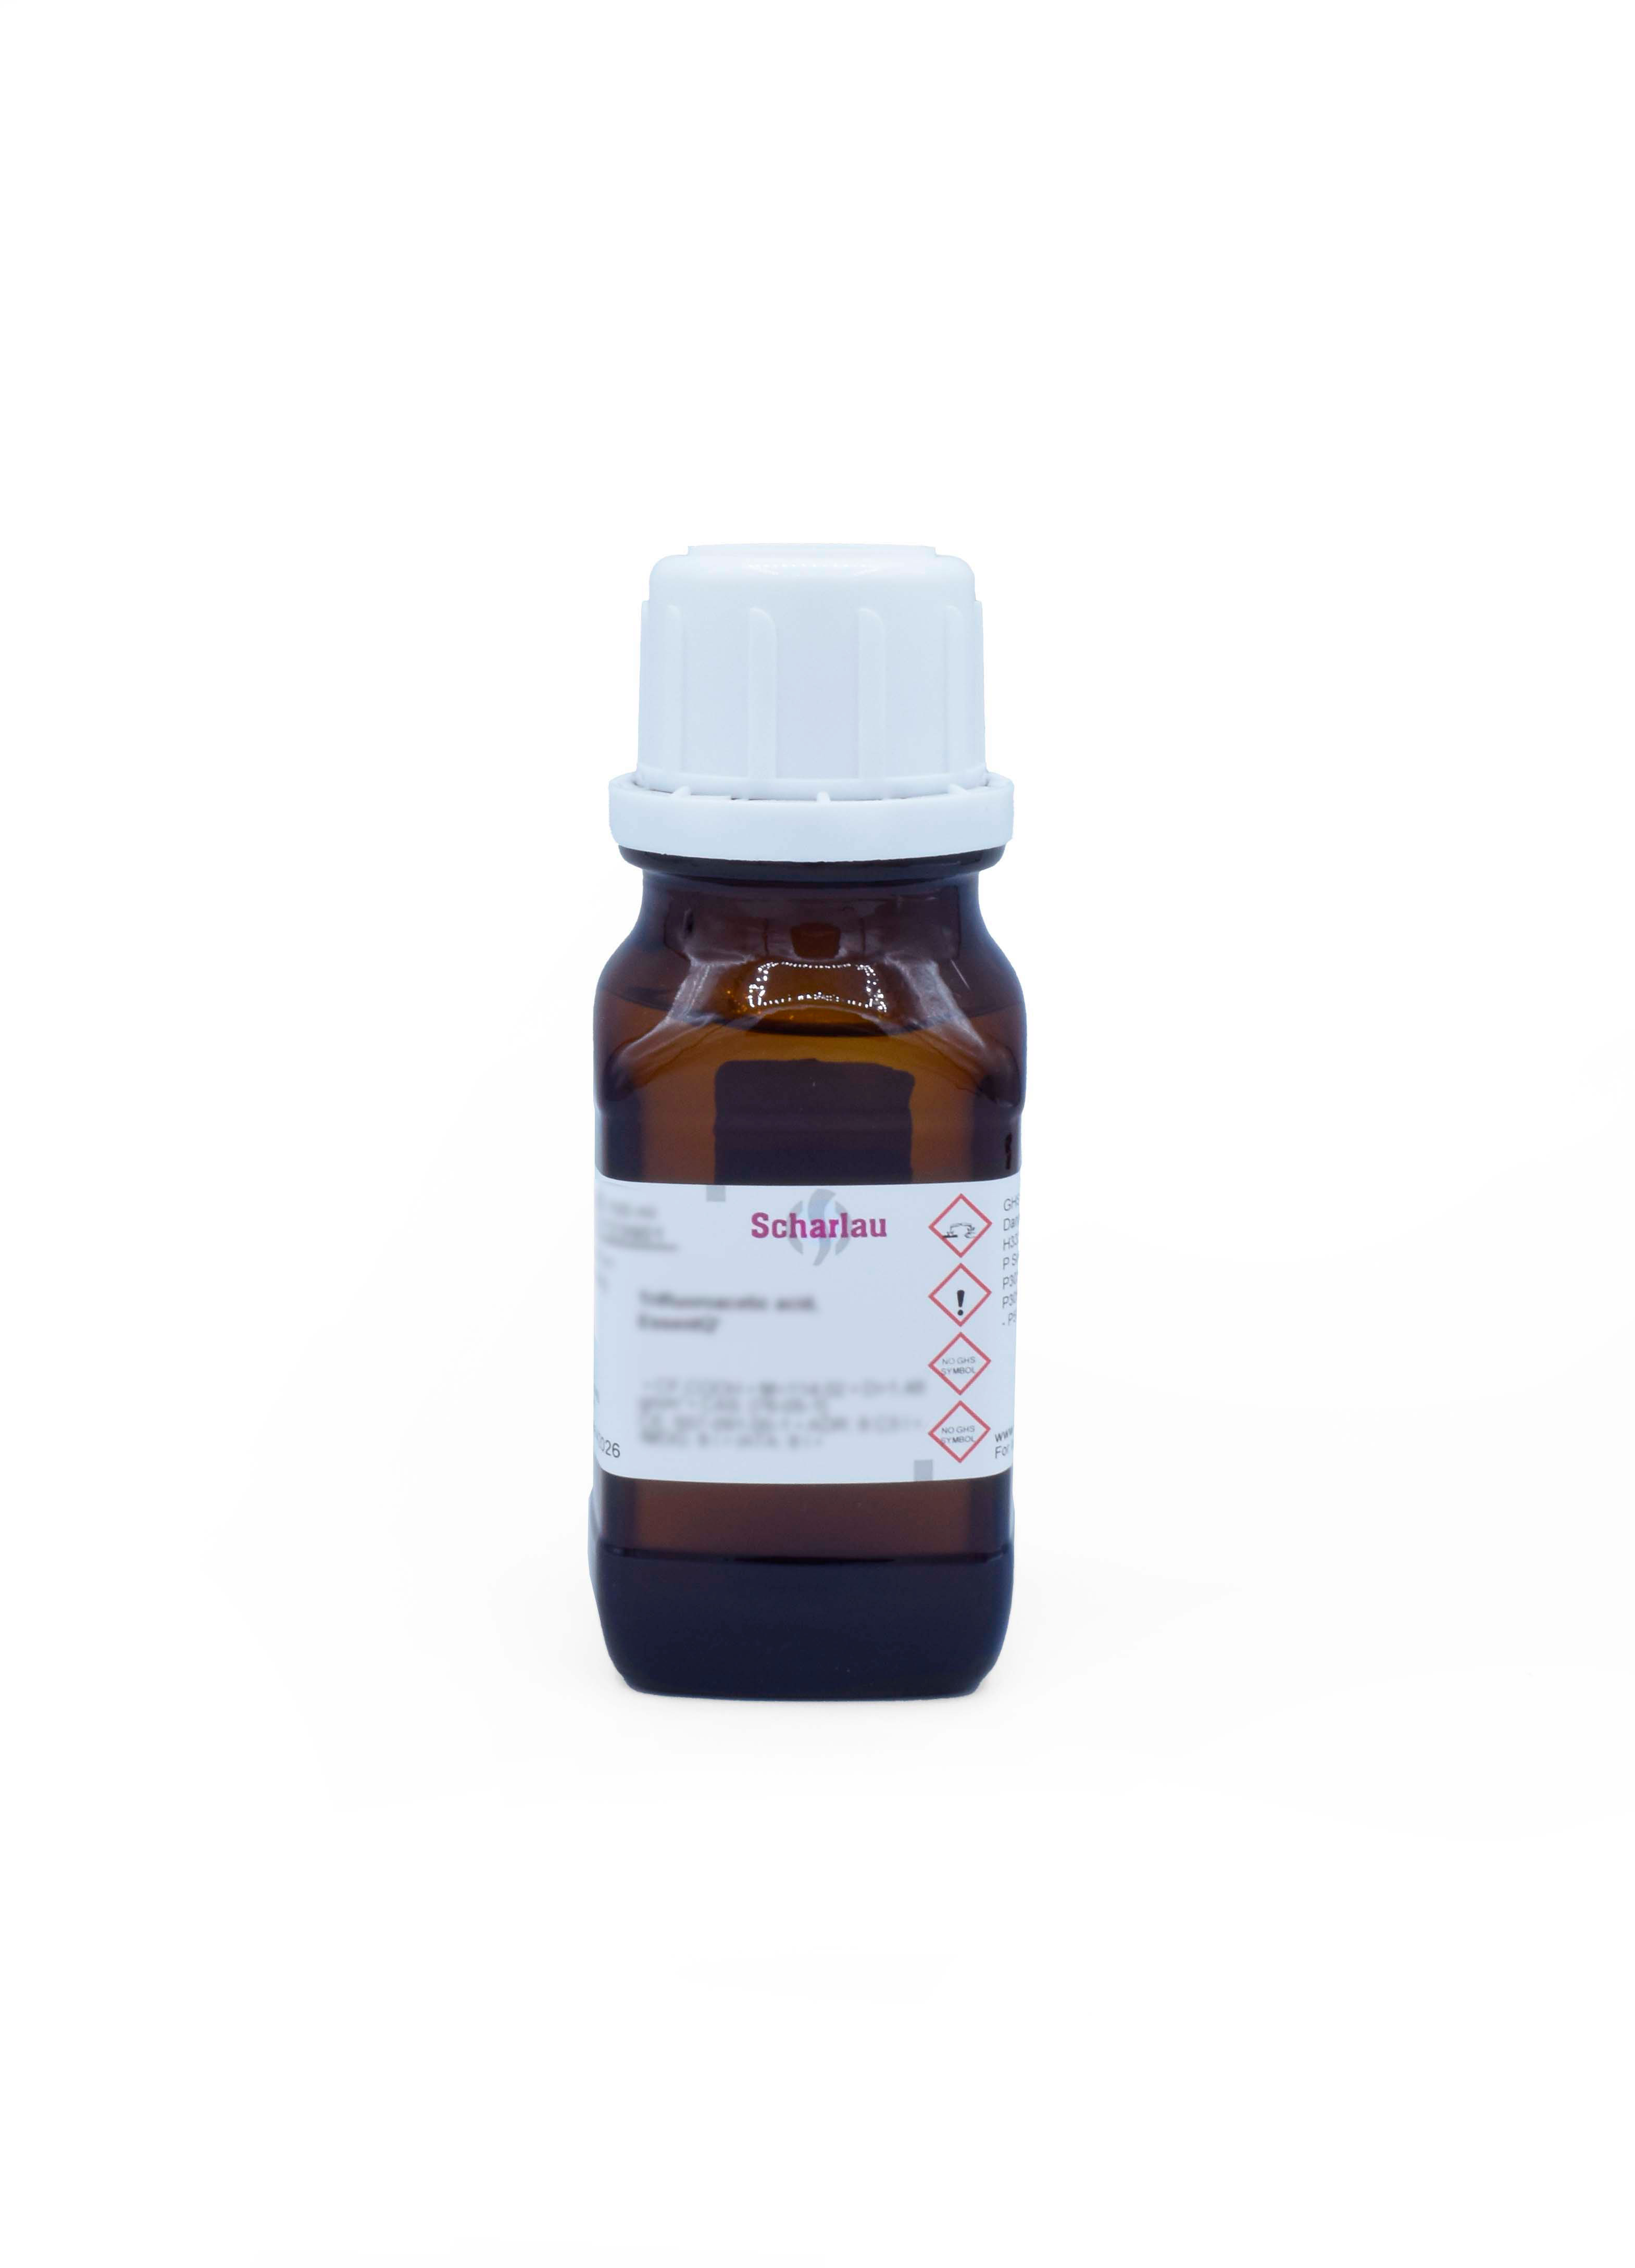 2-Mercaptoetanol, para biología molecular, Hidroxietil mercaptano, Tioetilenglicol, Tioglicol